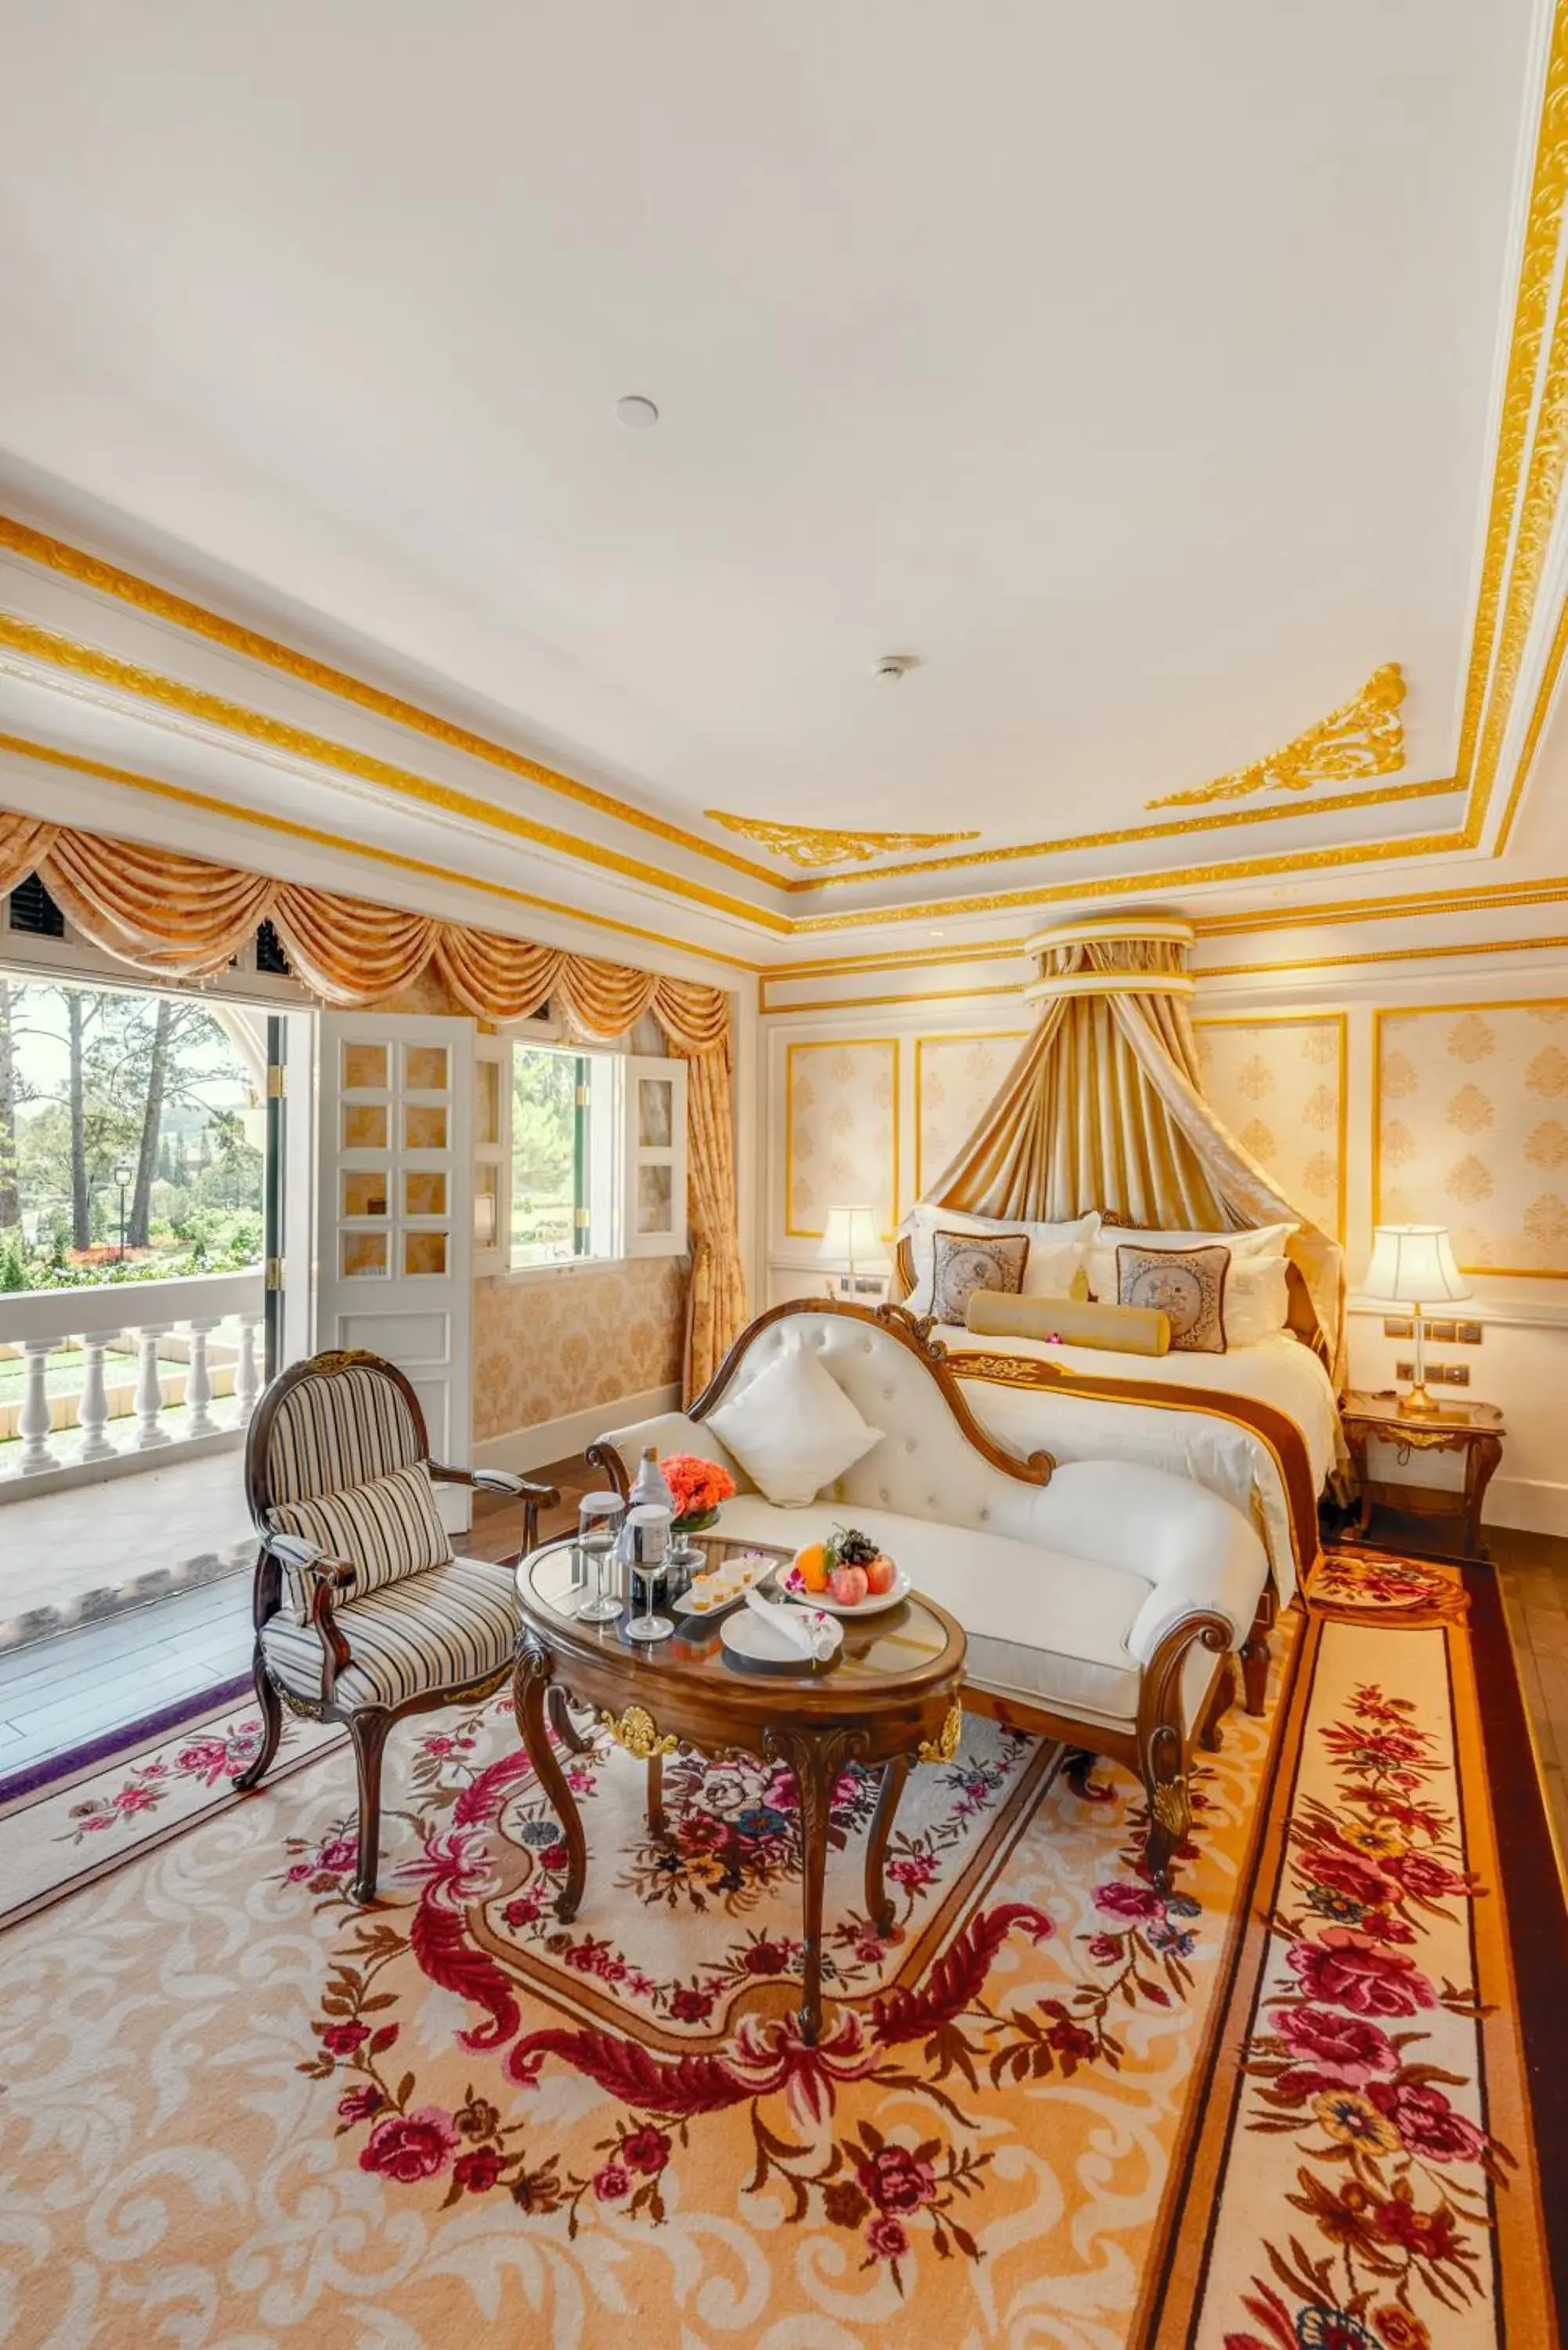 Royal Luxury in Dalat Palace Heritage Hotel